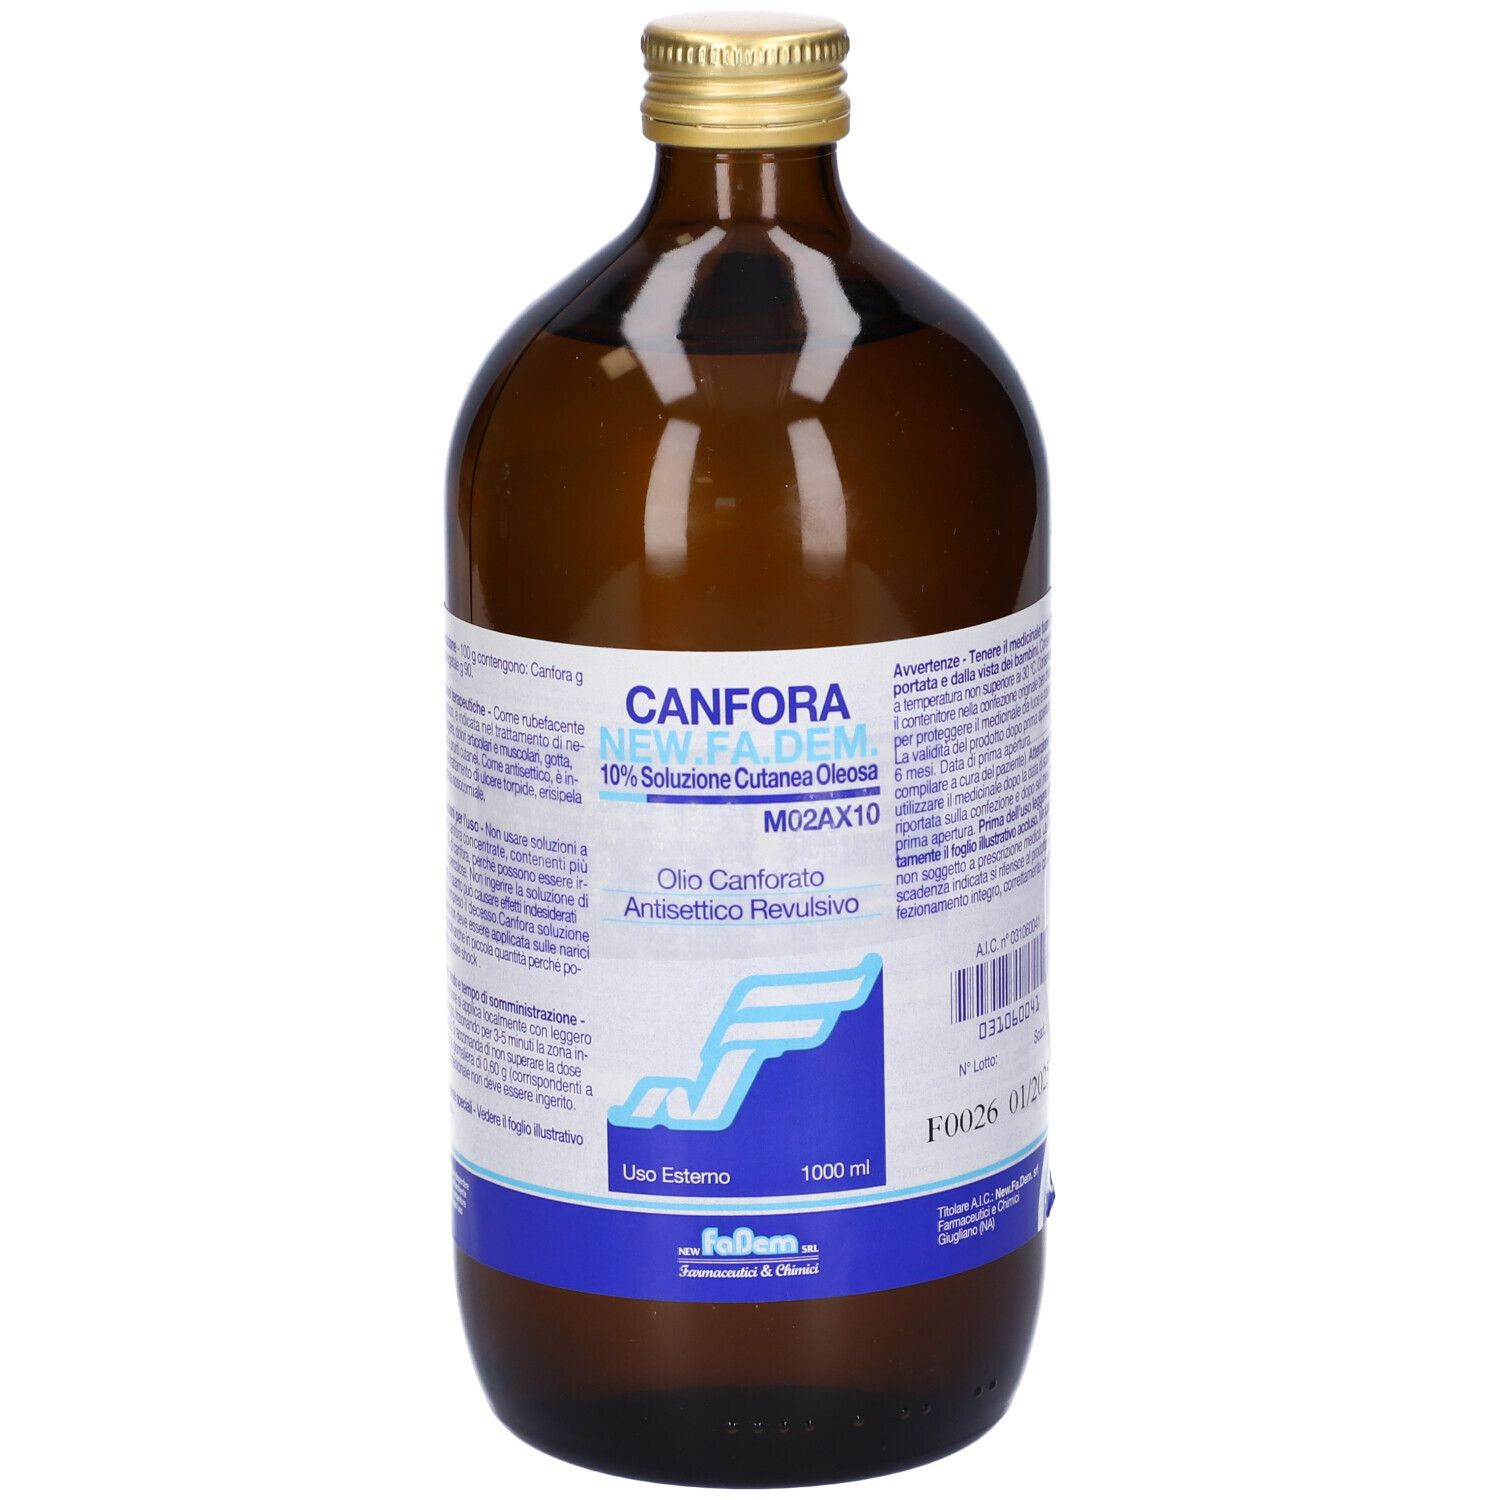 Image of Canfora New.fa.dem. 10% Soluzione Cutanea